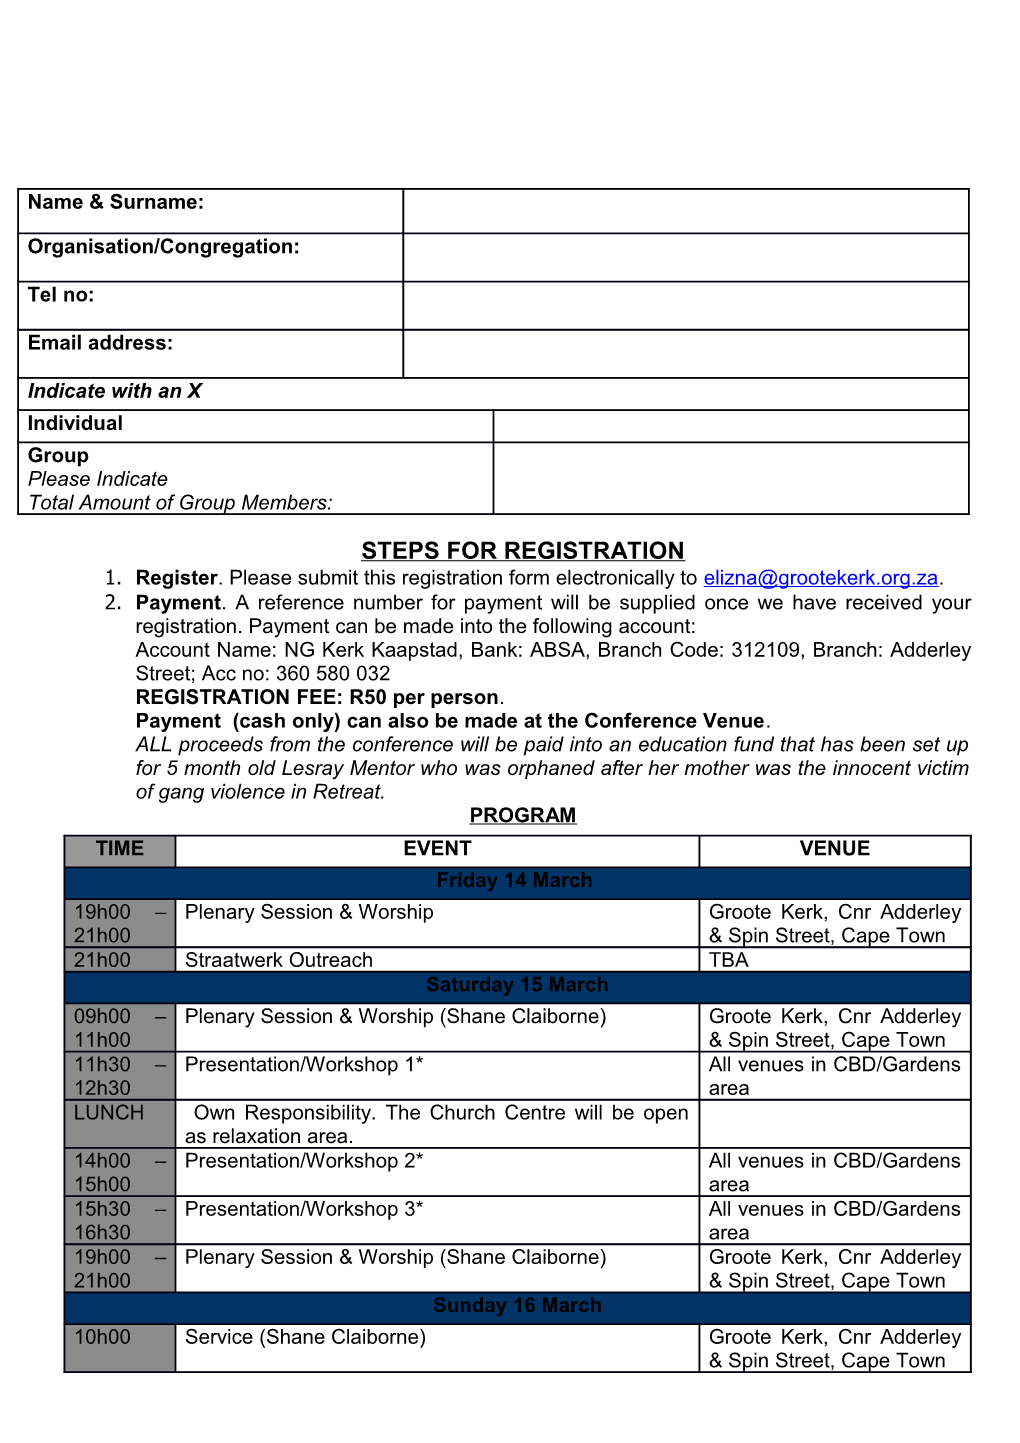 Steps for Registration